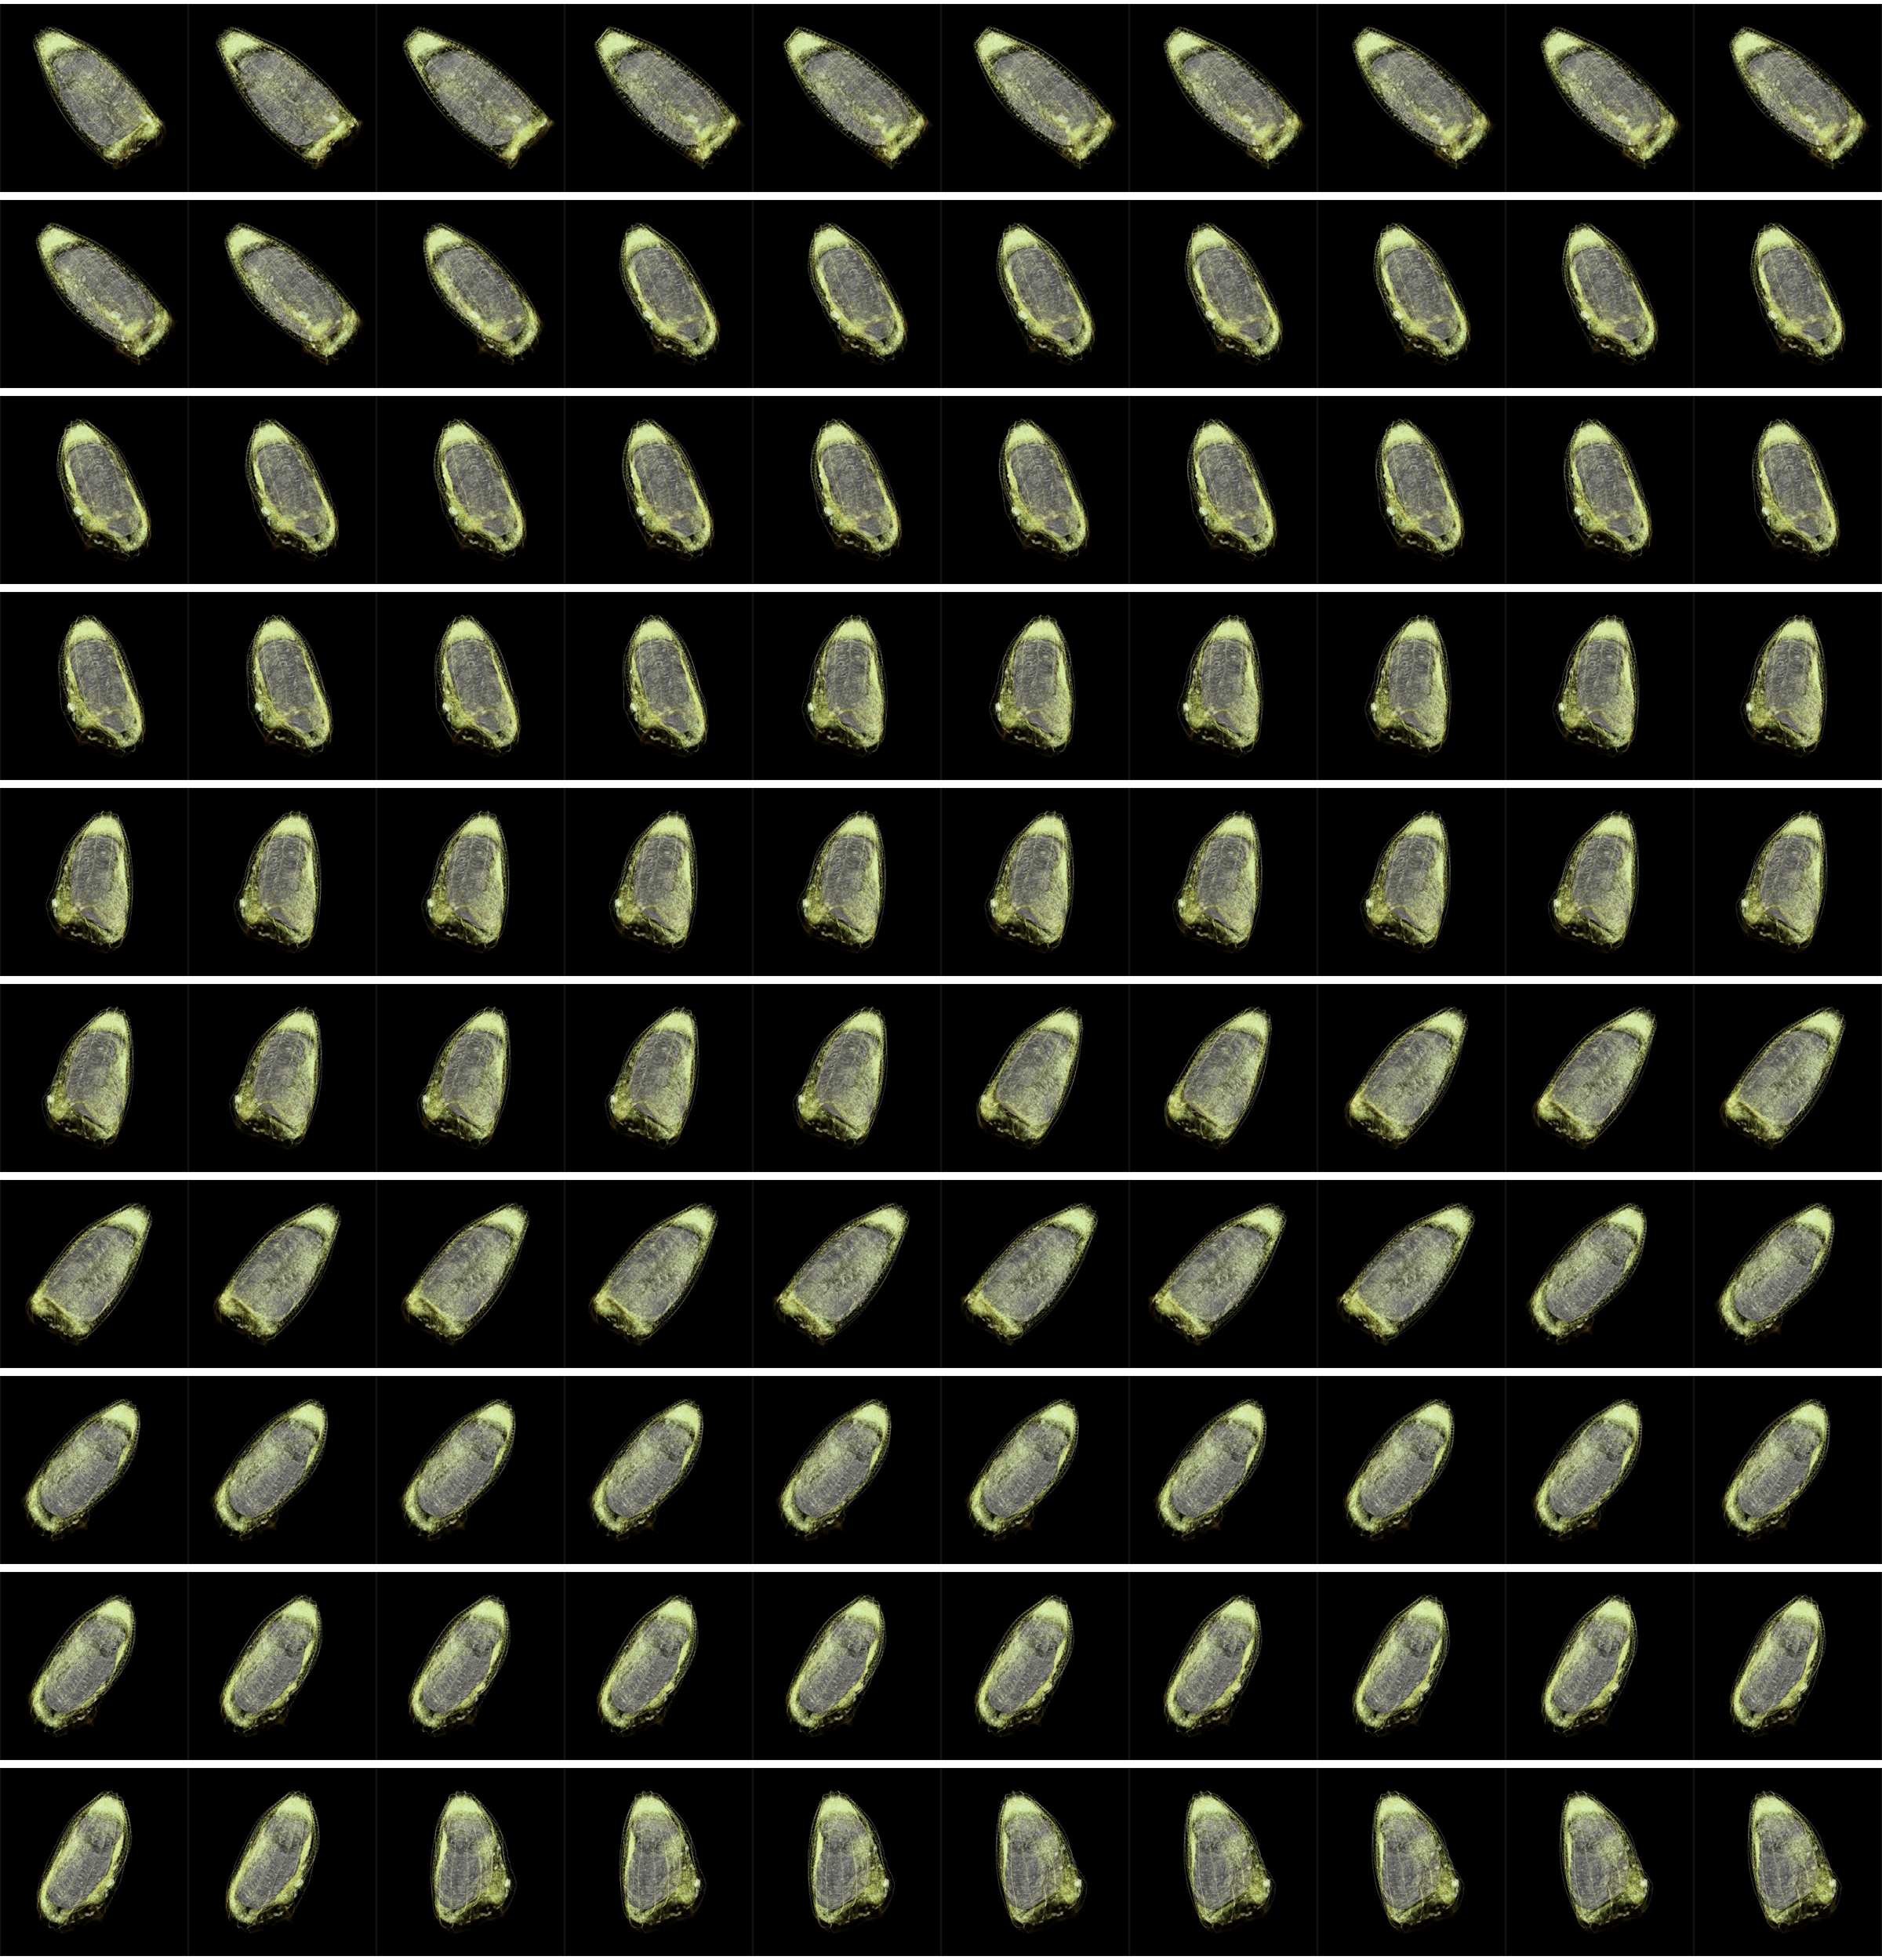 Tomographic data of pieris brassica SubNetAIR